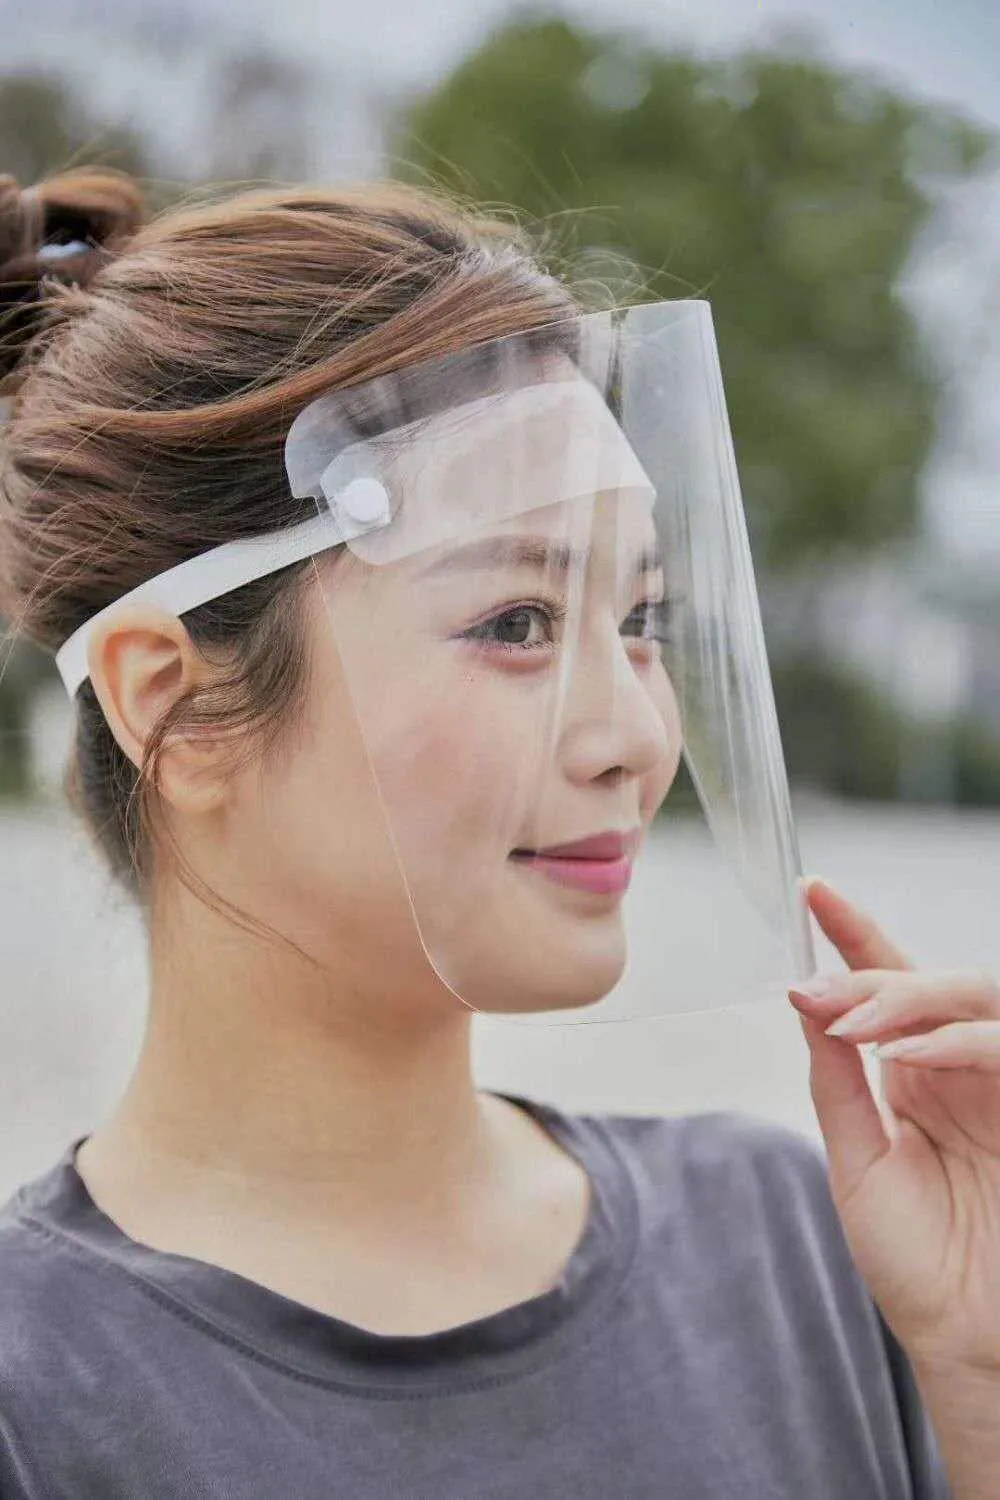 DHL verzending op voorraad! Transparant beschermend masker Volledige gezichtsschild Mascherine Fit voor volwassenen Kind Regenachtig rijvlak Cover Stuur gratis